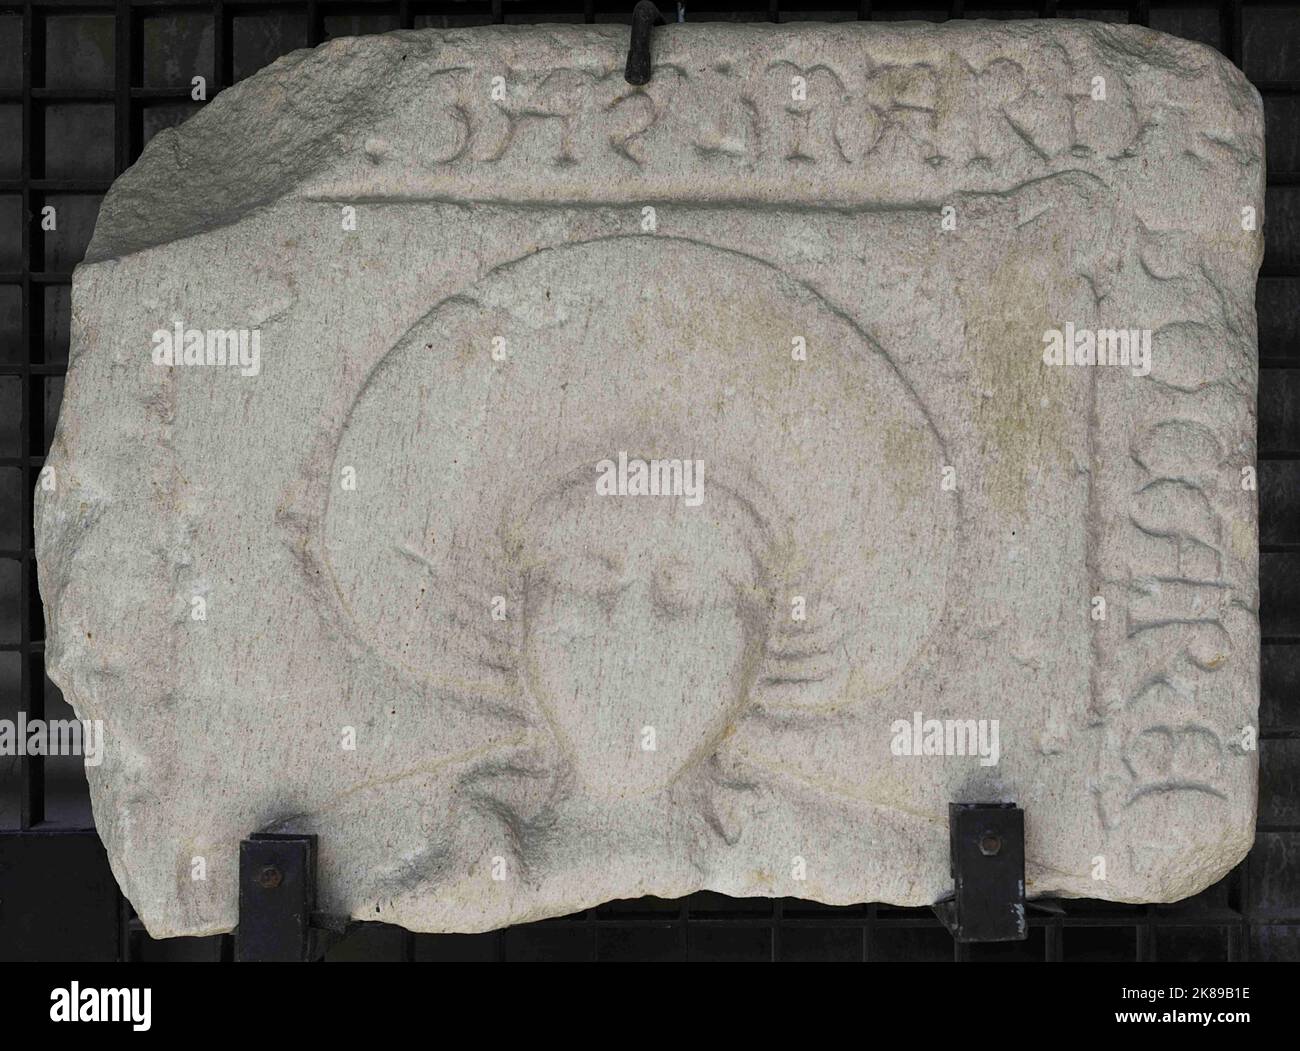 Lapide di Maria, donna con testa a rullo, una tendenza di grande successo nella scultura funeraria galiziana. Foto Stock